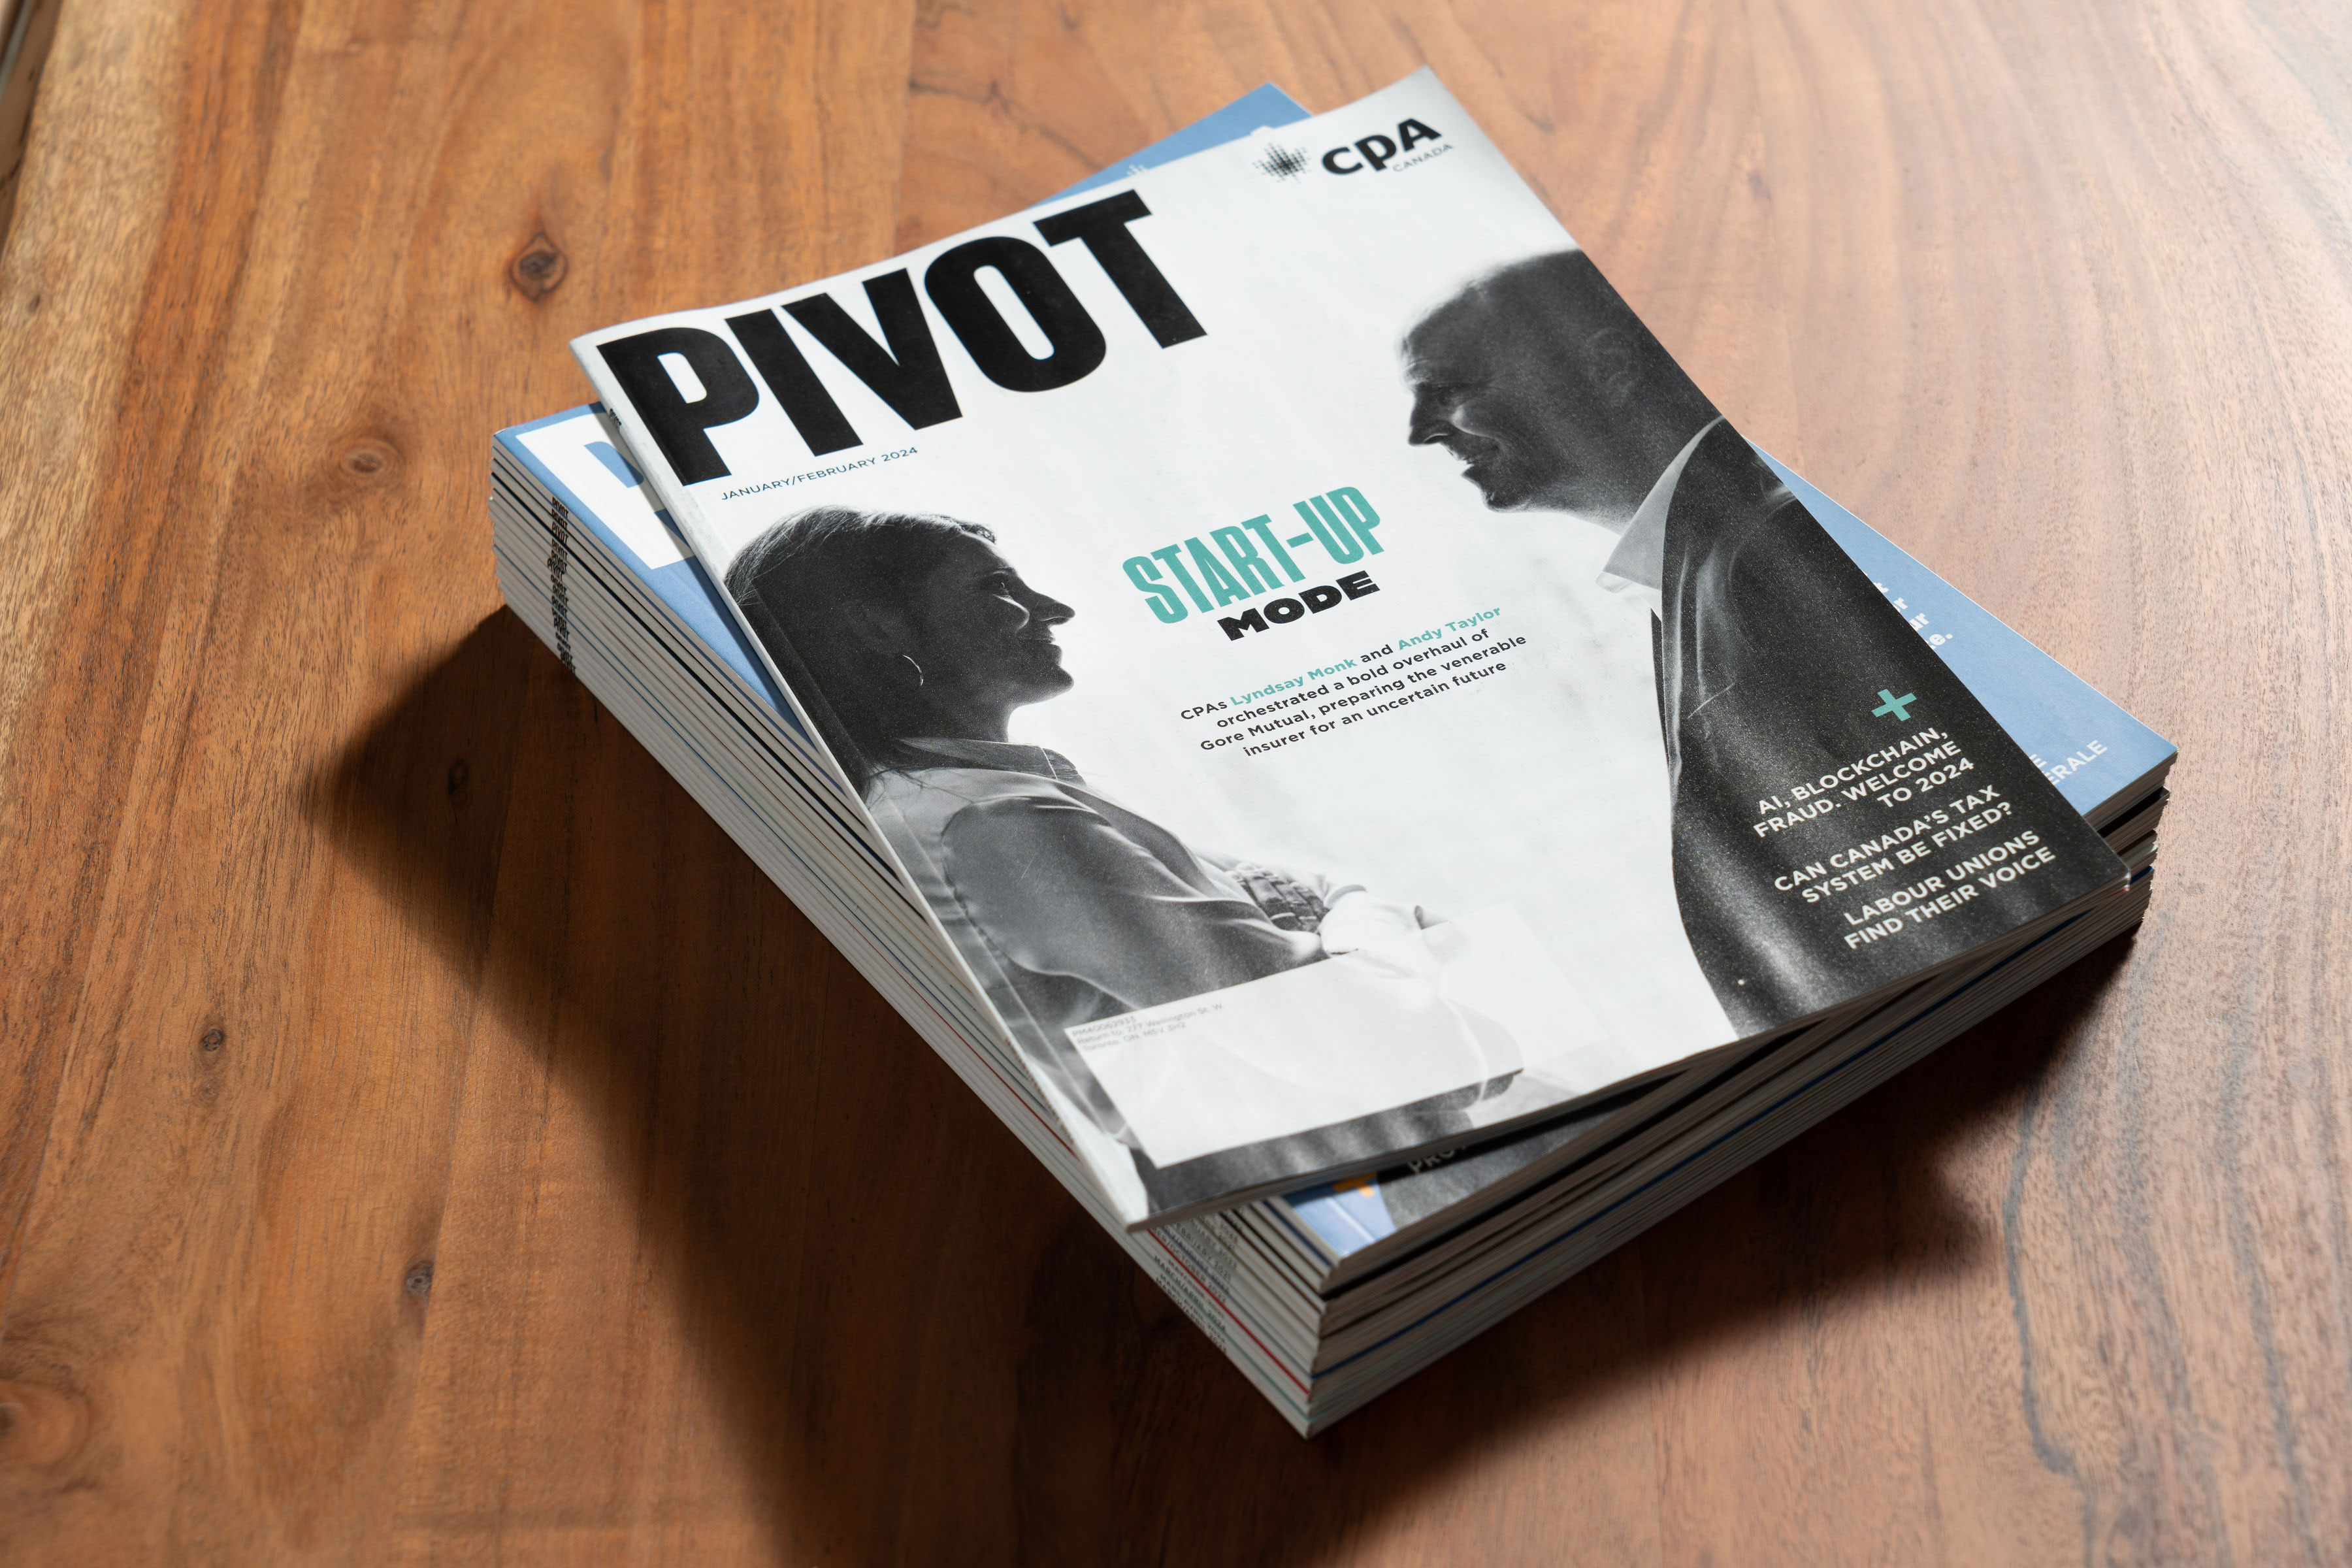 Copies of Pivot magazine